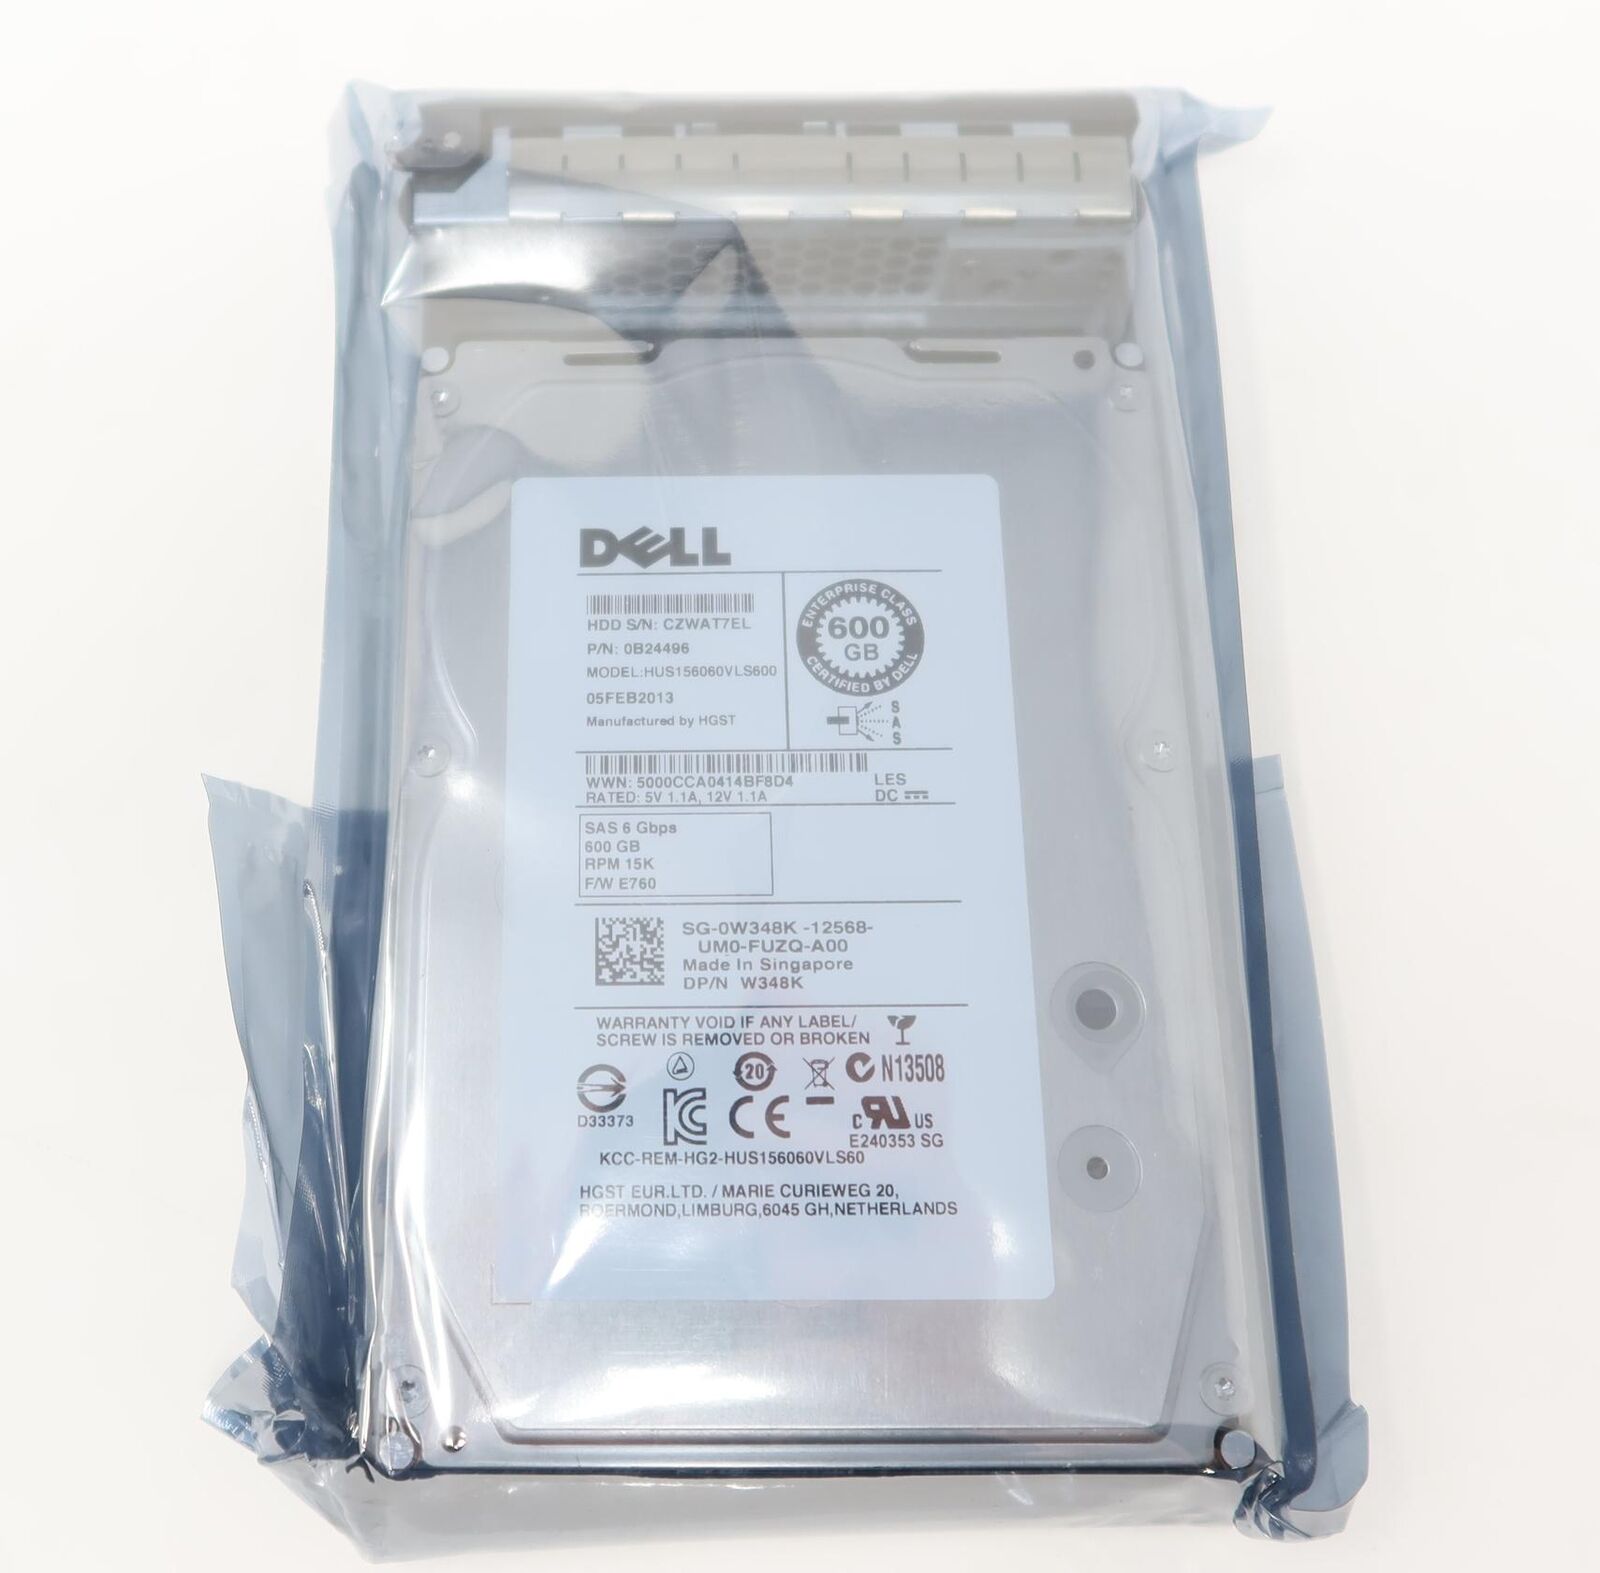 Dell HUS156060VLS600 W348K 600gb 15k 3.5in SAS Hard Drive